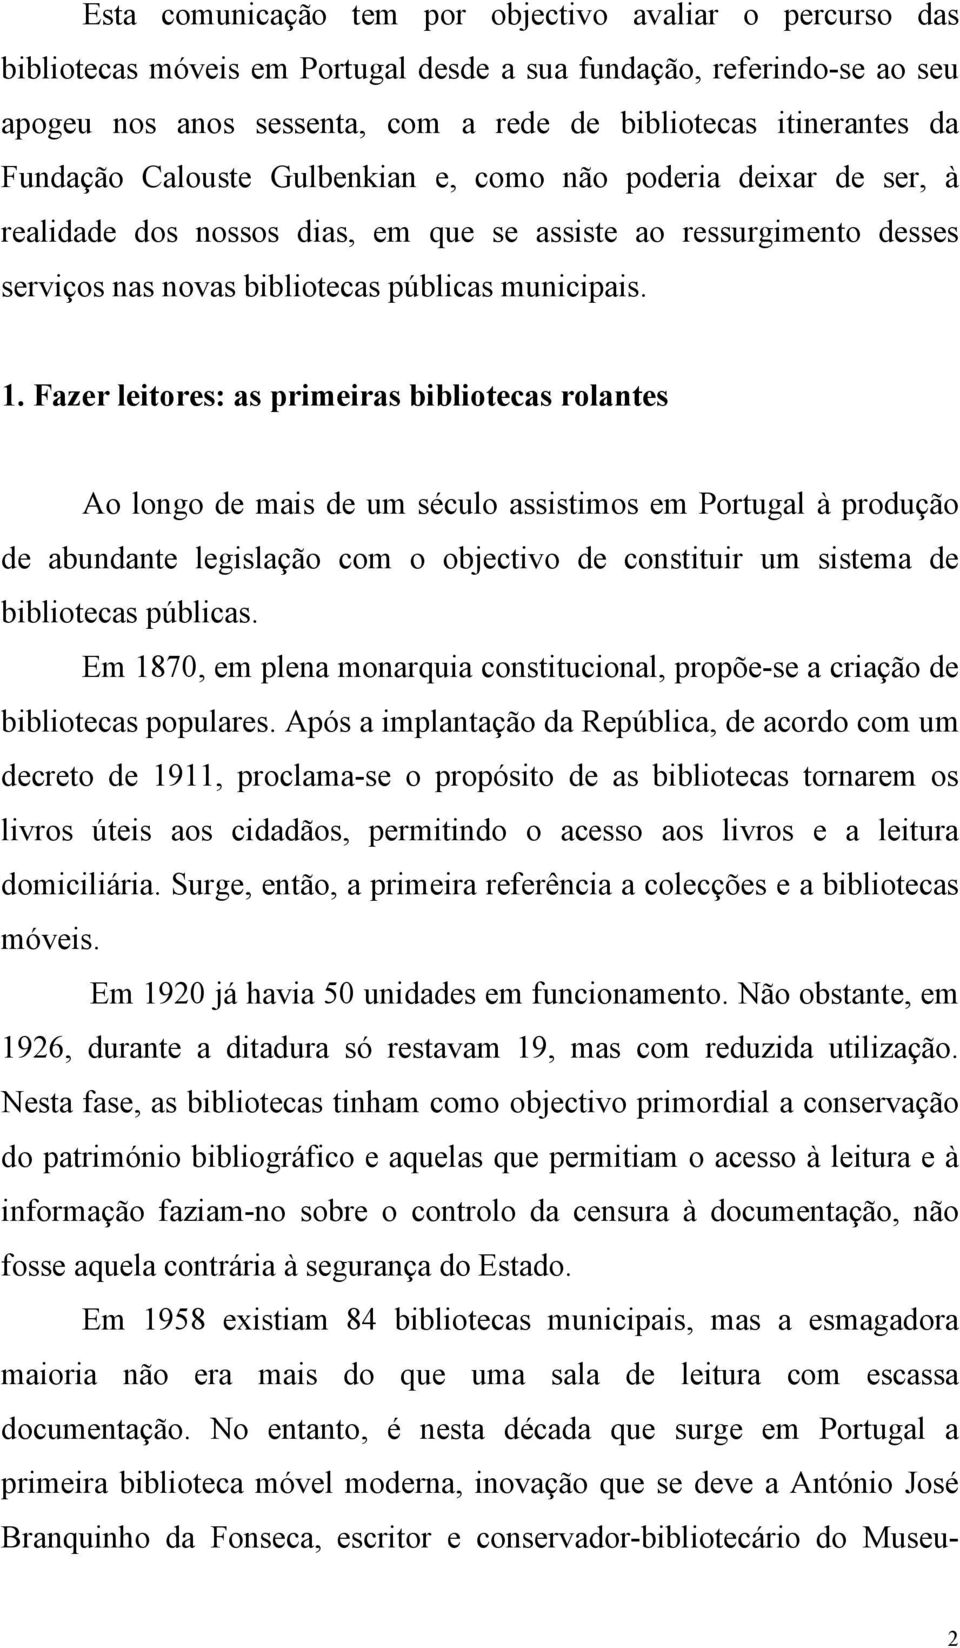 Fazer leitores: as primeiras bibliotecas rolantes Ao longo de mais de um século assistimos em Portugal à produção de abundante legislação com o objectivo de constituir um sistema de bibliotecas